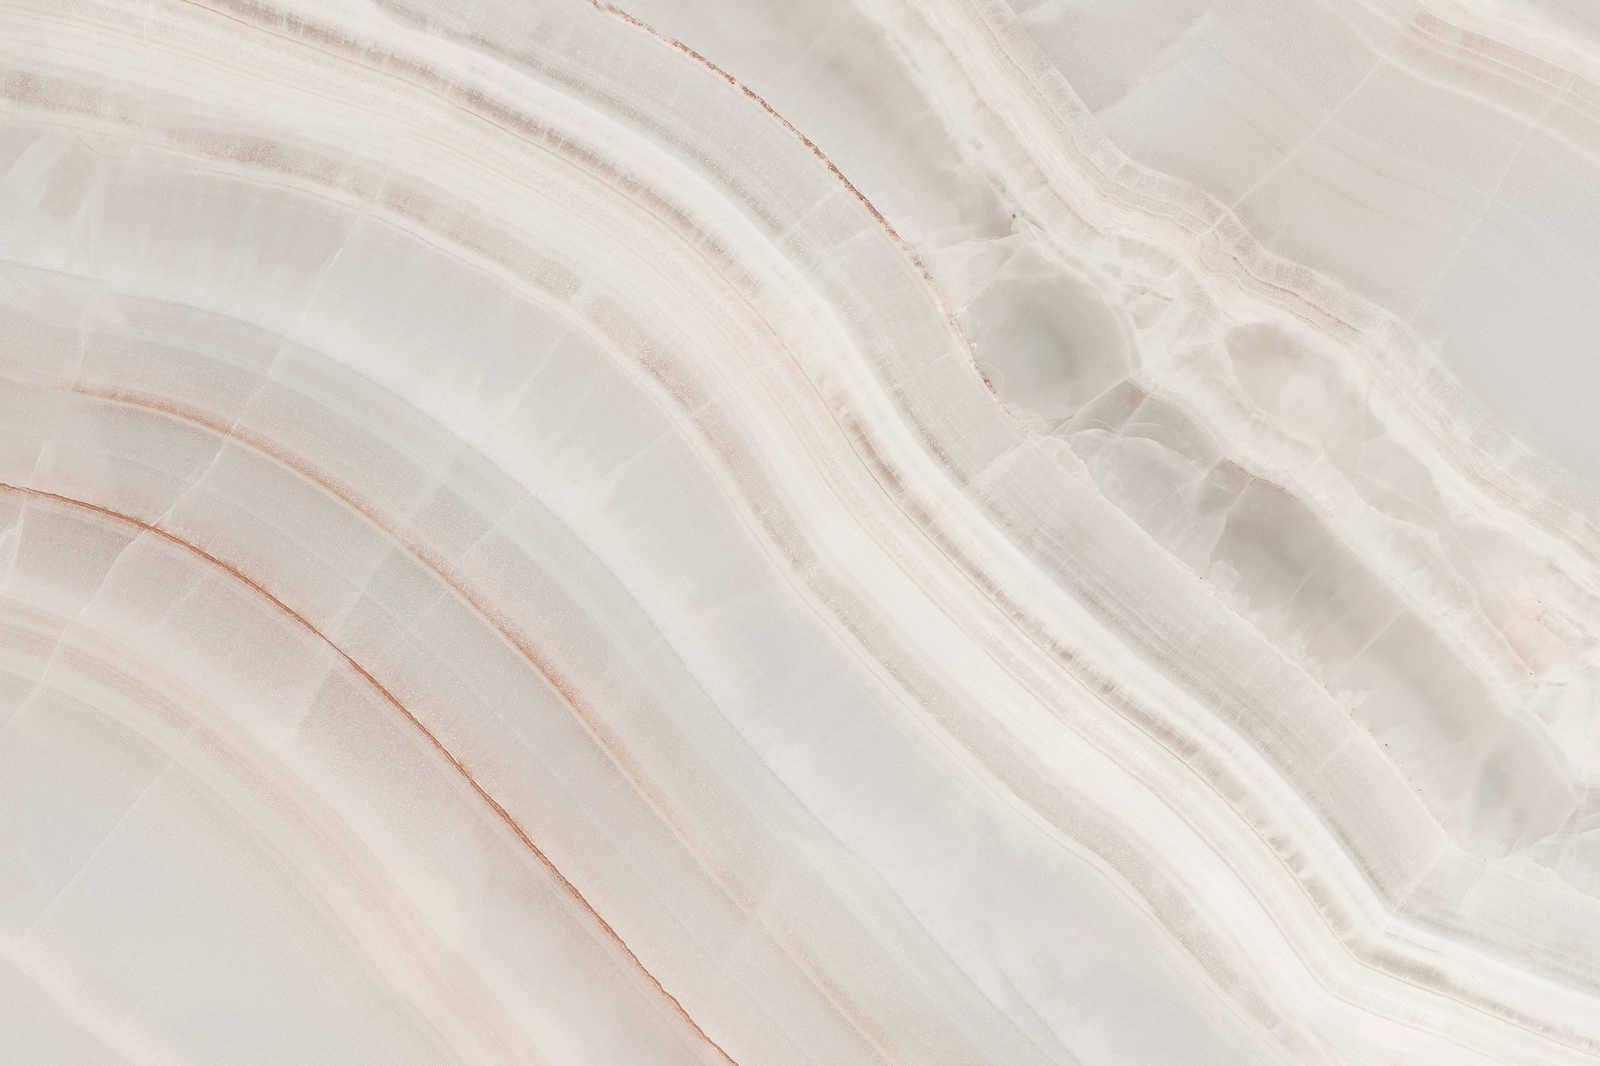             Quadro su tela di marmo con pannello di pietra marmorizzata - 0,90 m x 0,60 m
        